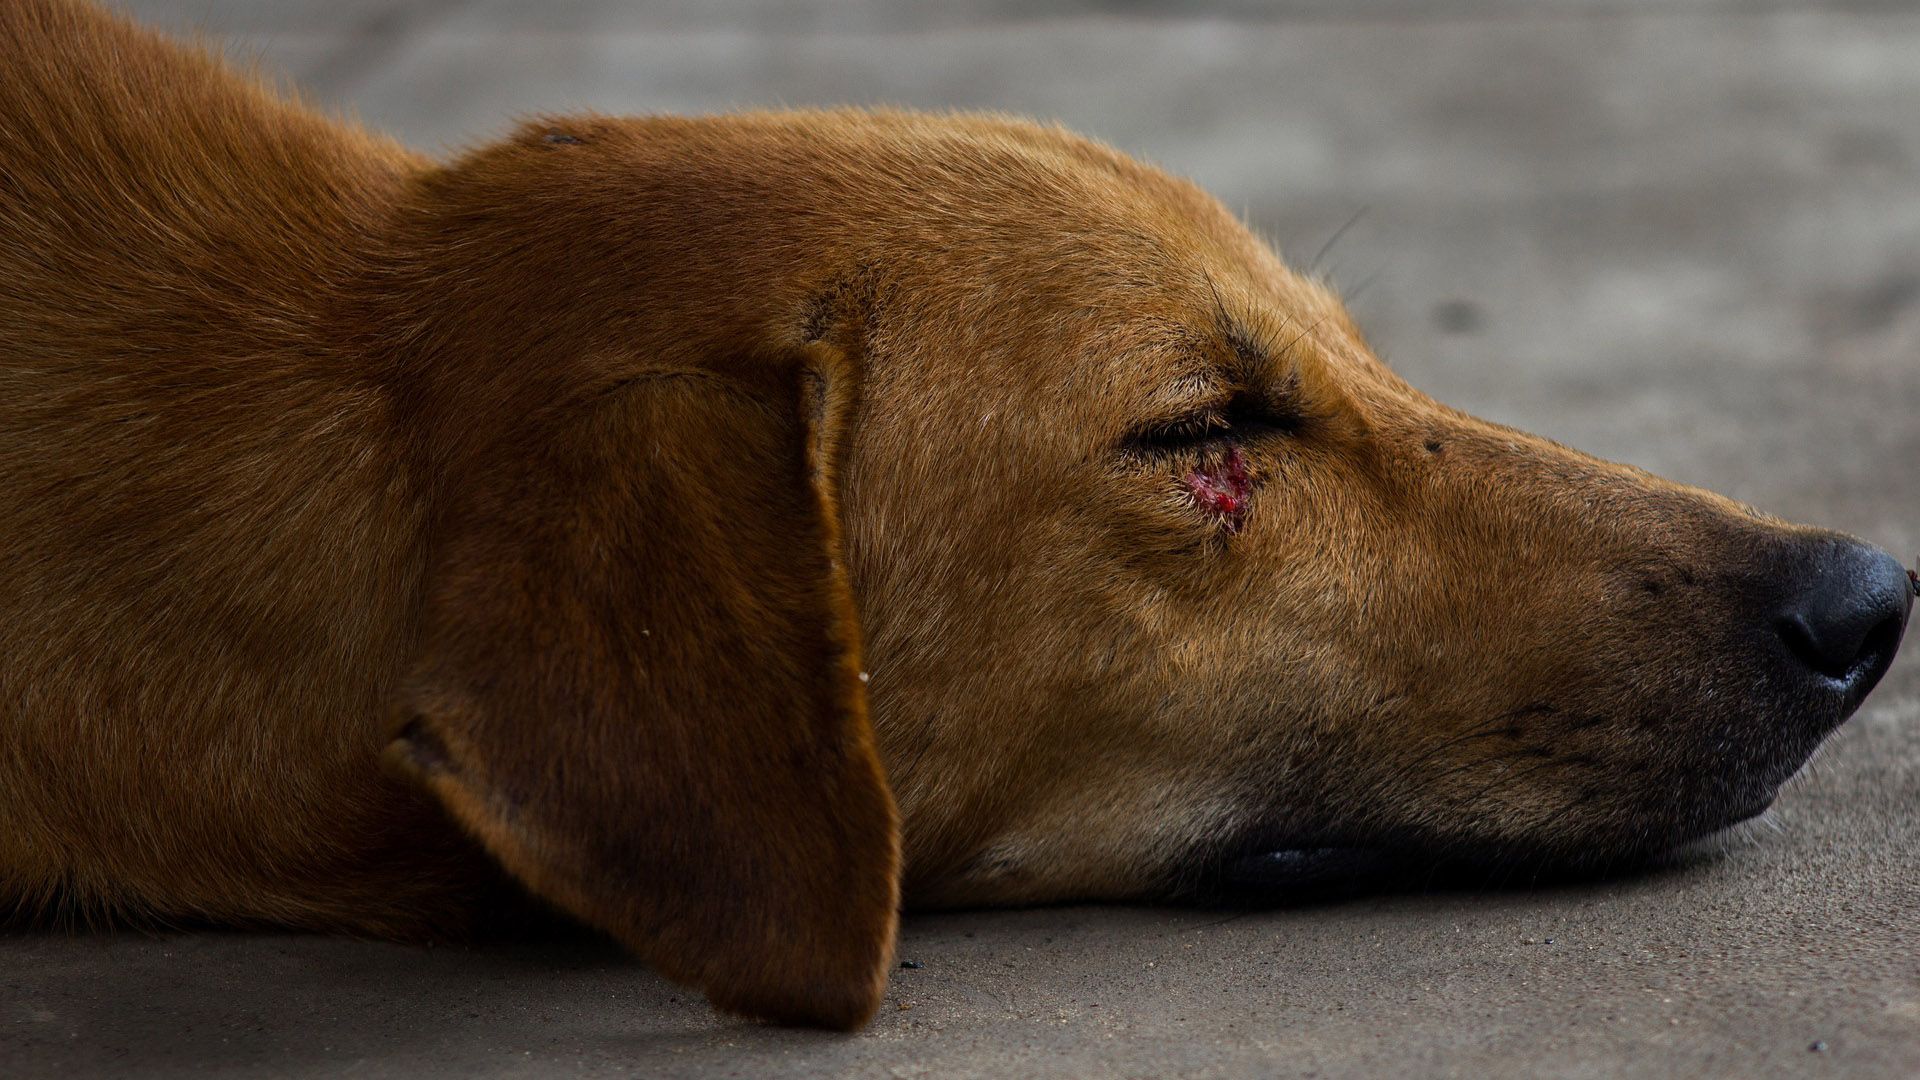 En México, miles de perros son víctimas de abusos y maltratos cada año (Foto: Archivo)